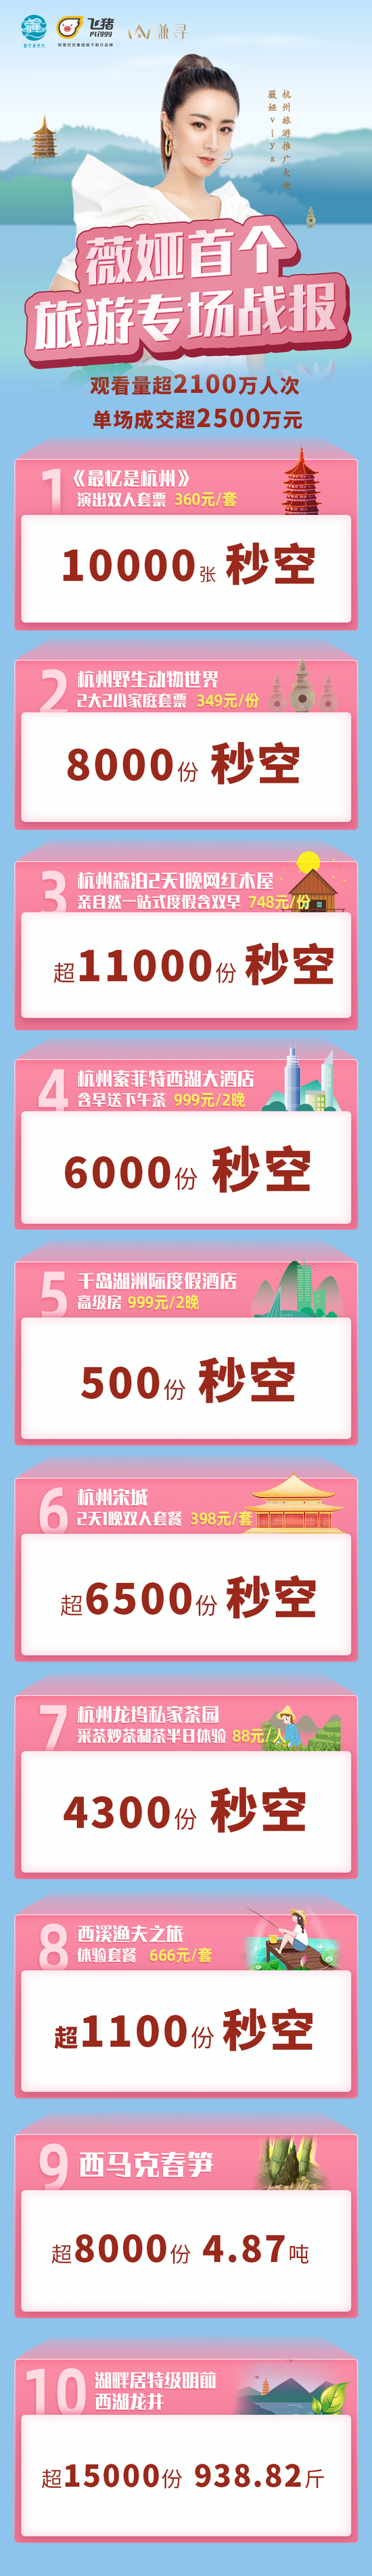 薇娅城市文旅直播首秀成交破2500万 杭州市文化广电旅游局供图